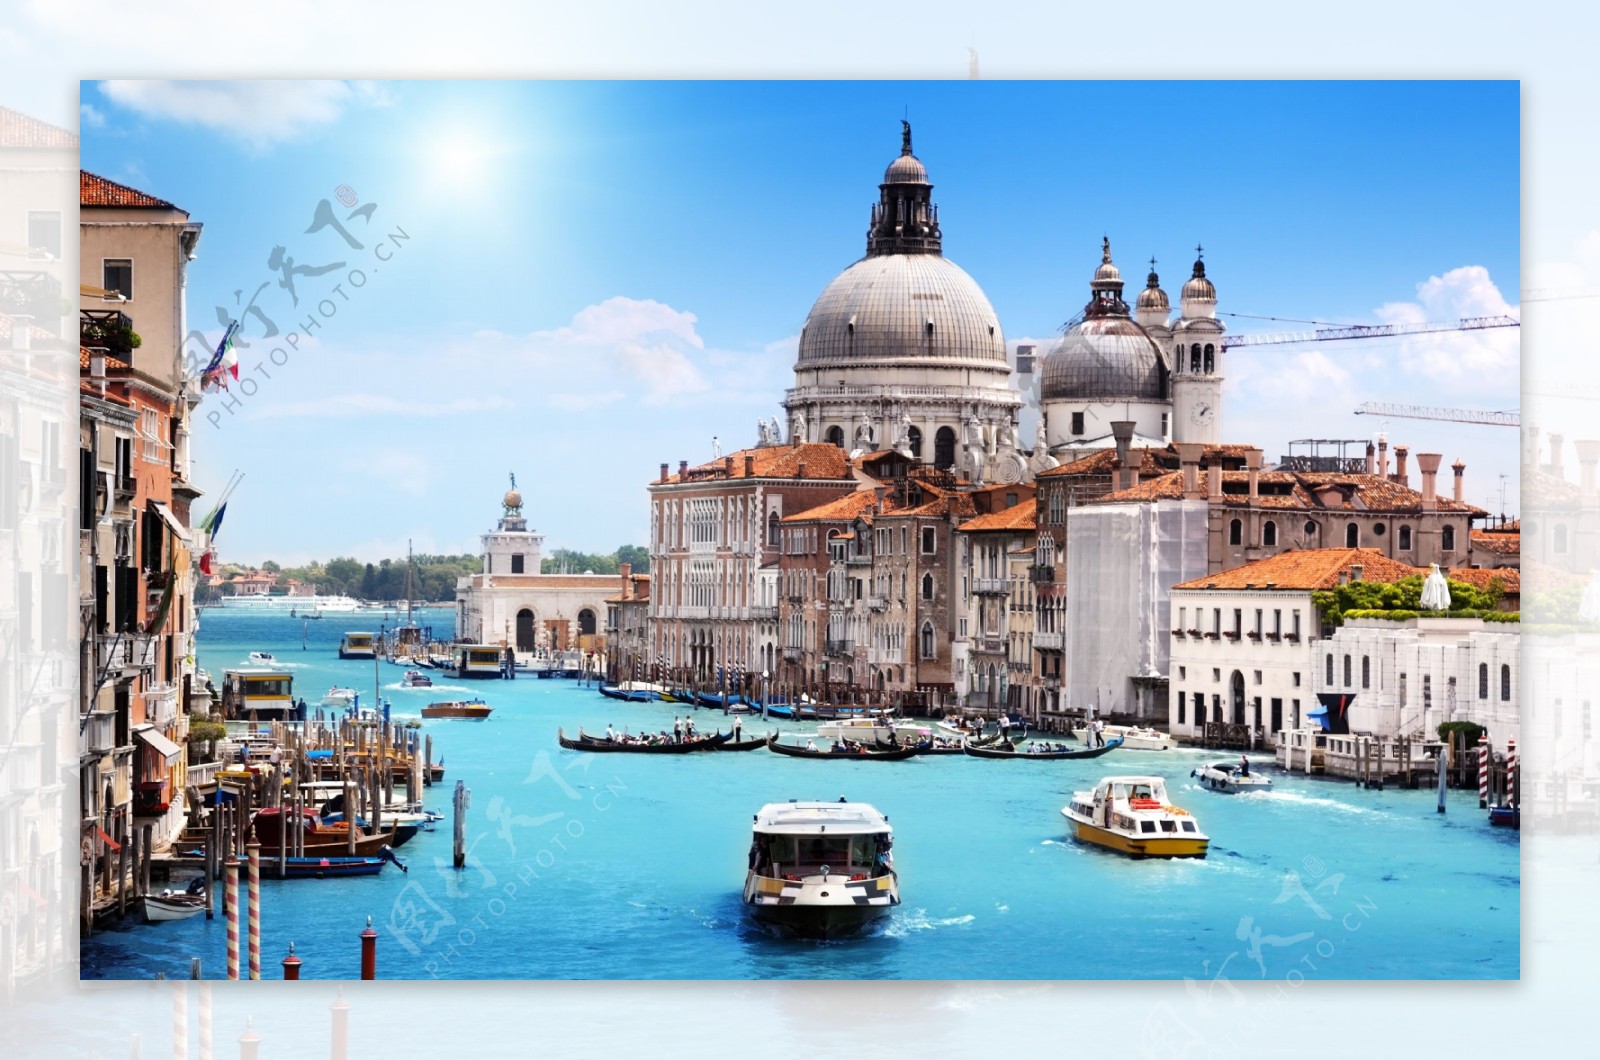 水上威尼斯威尼斯水城图片